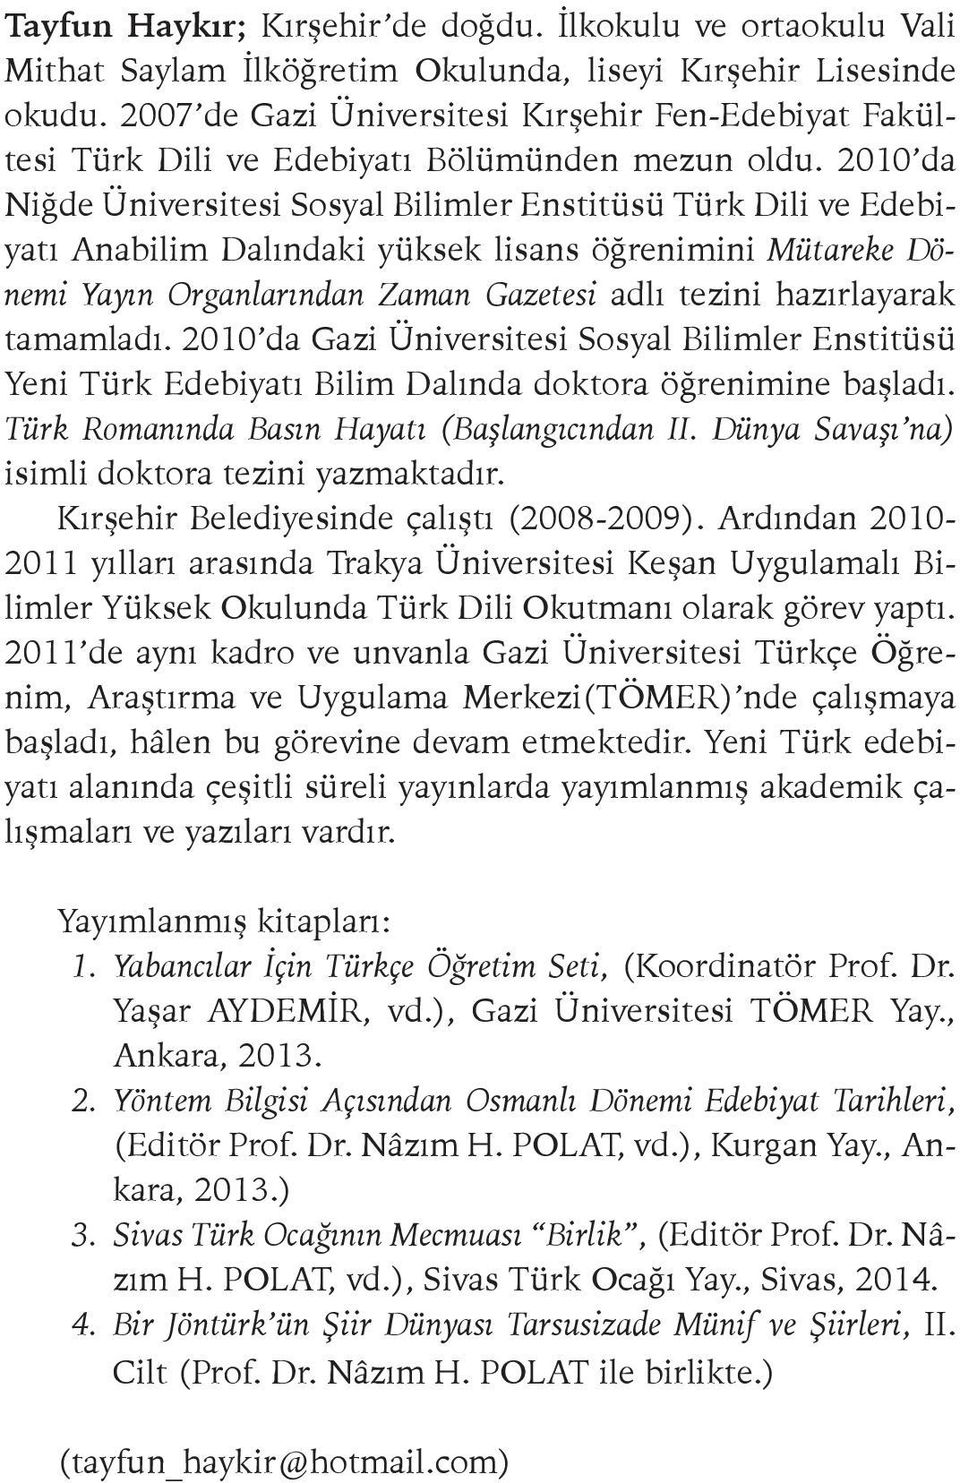 2010 da Niğde Üniversitesi Sosyal Bilimler Enstitüsü Türk Dili ve Edebiyatı Anabilim Dalındaki yüksek lisans öğrenimini Mütareke Dönemi Yayın Organlarından Zaman Gazetesi adlı tezini hazırlayarak